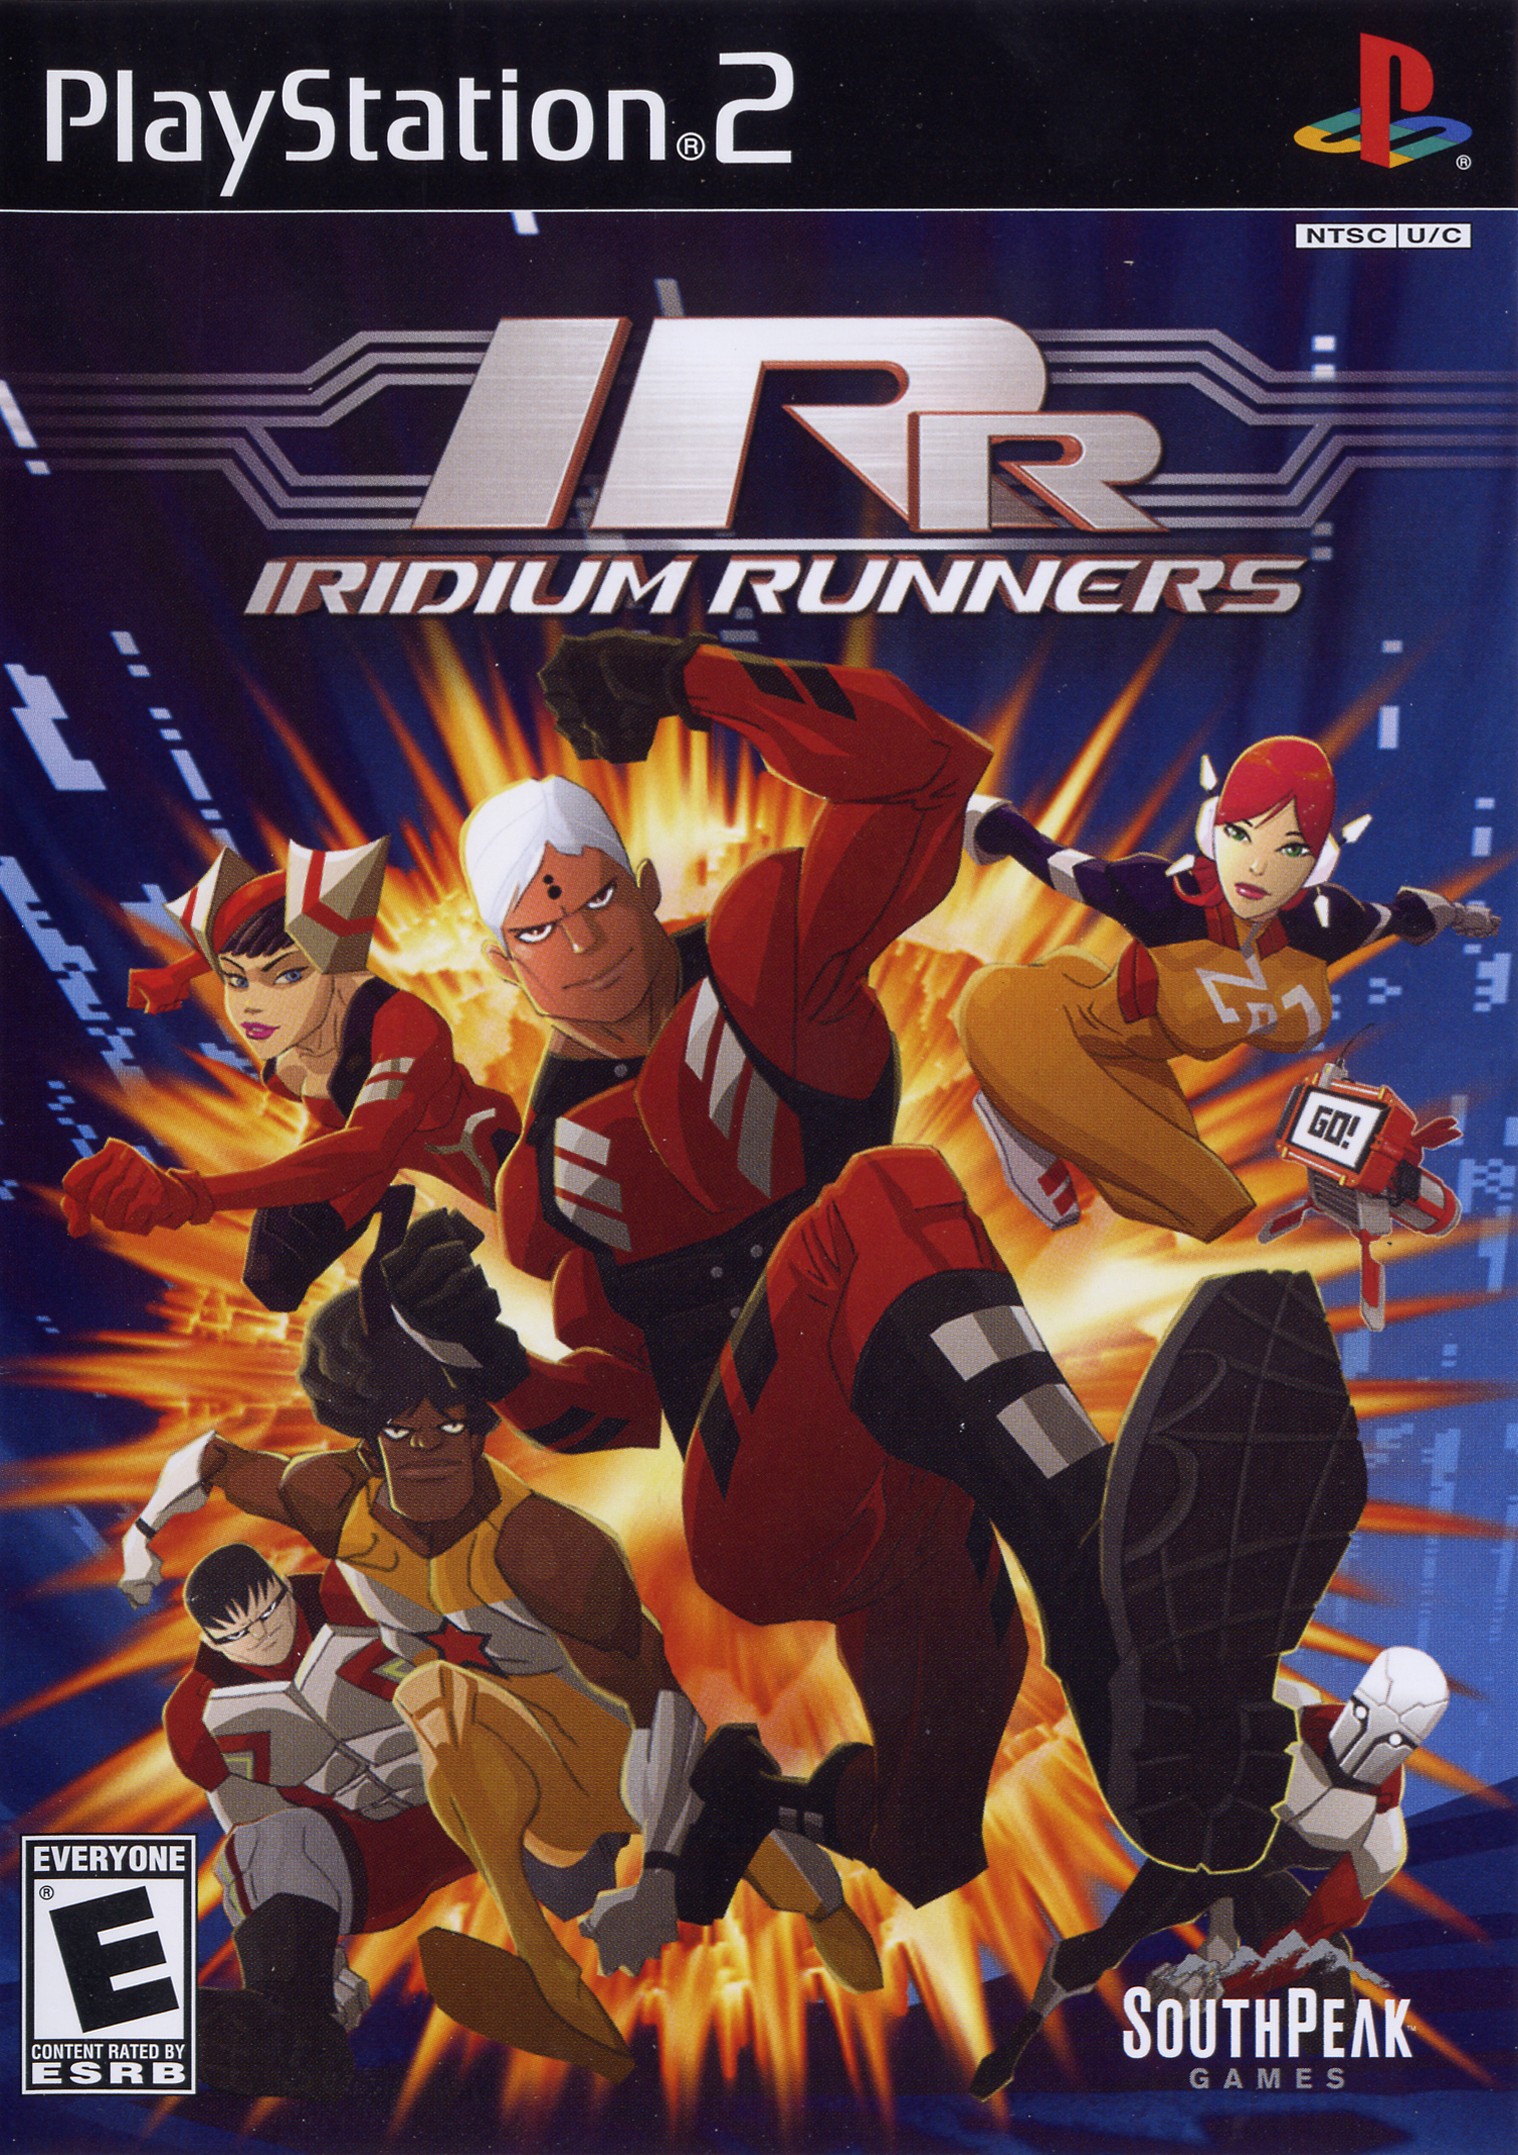 'Iridium Runners'